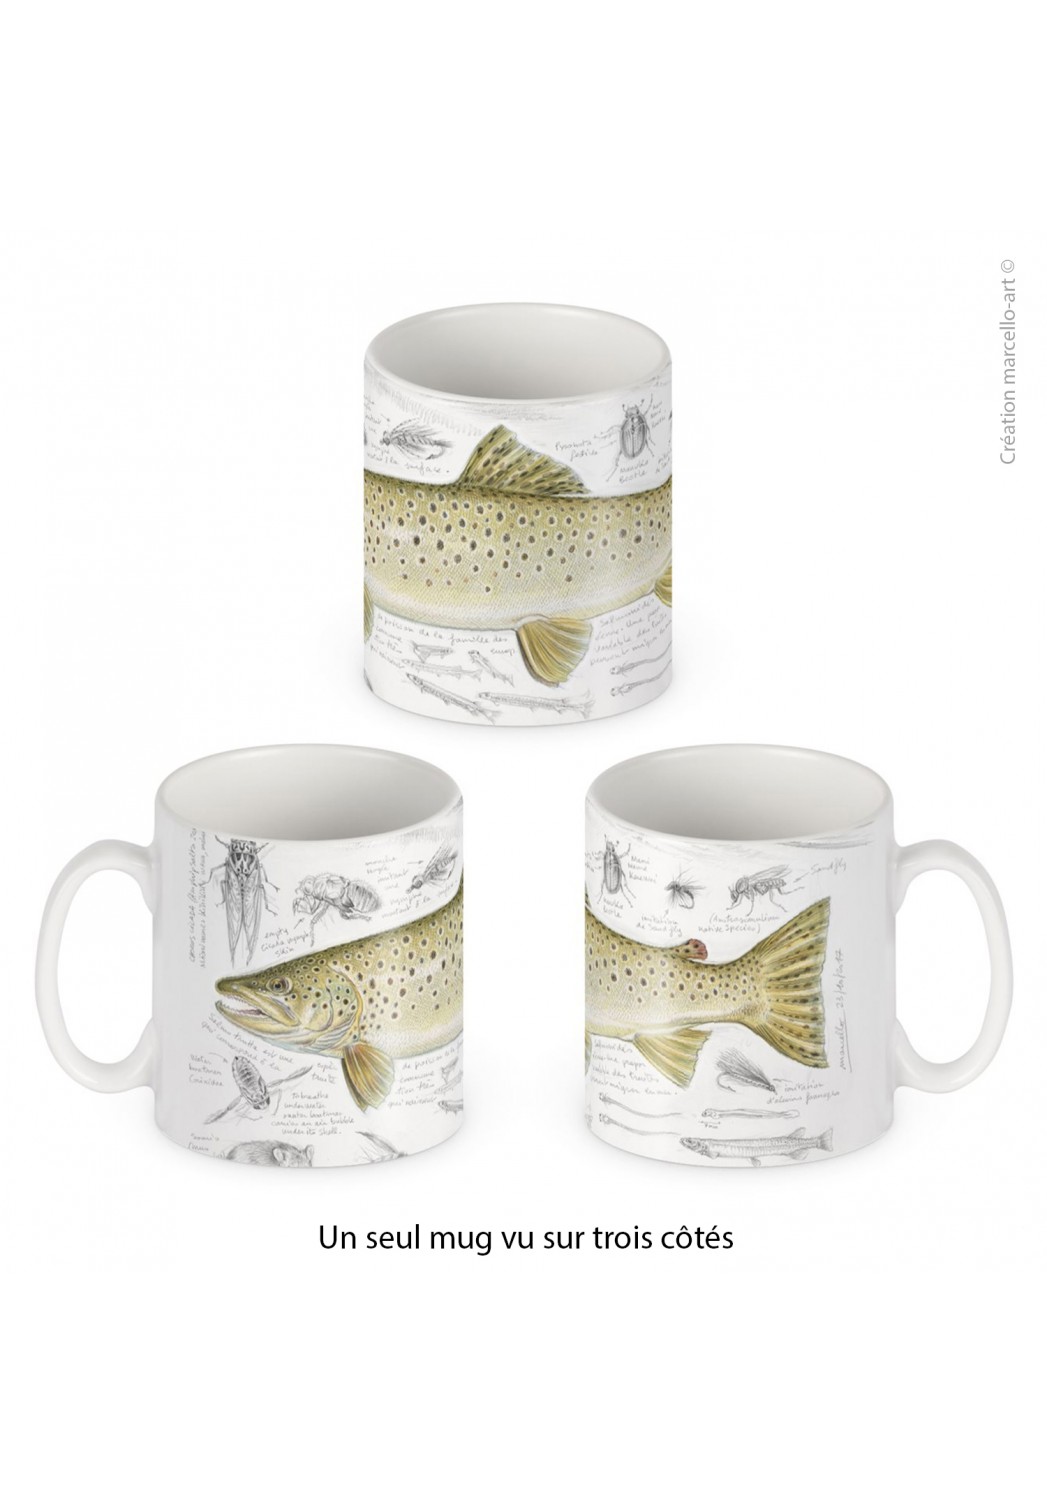 Marcello-art: Decoration accessoiries Porcelain mug 372 brown trout